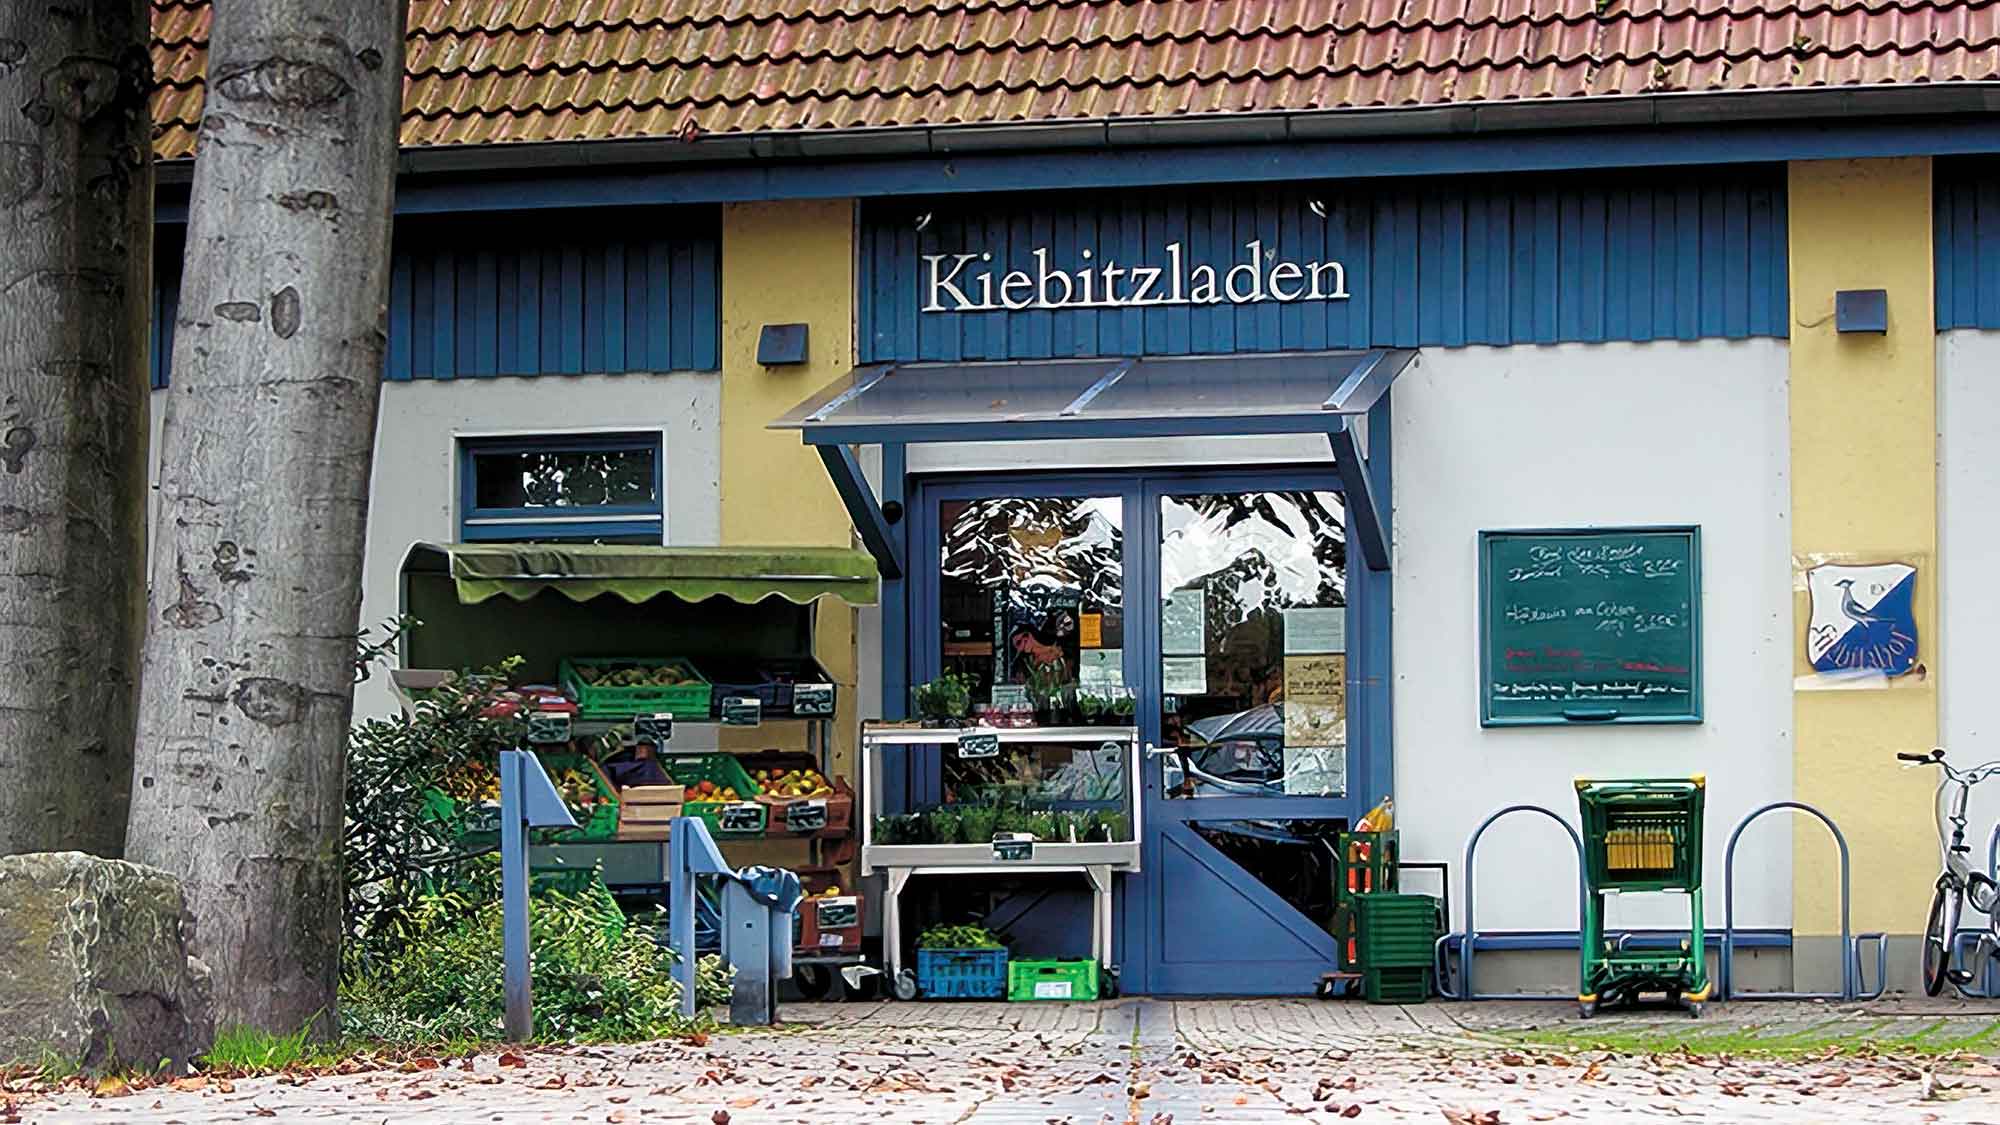 Anzeige: Der Kiebitzladen Gütersloh: gesund, gesund, September 2004